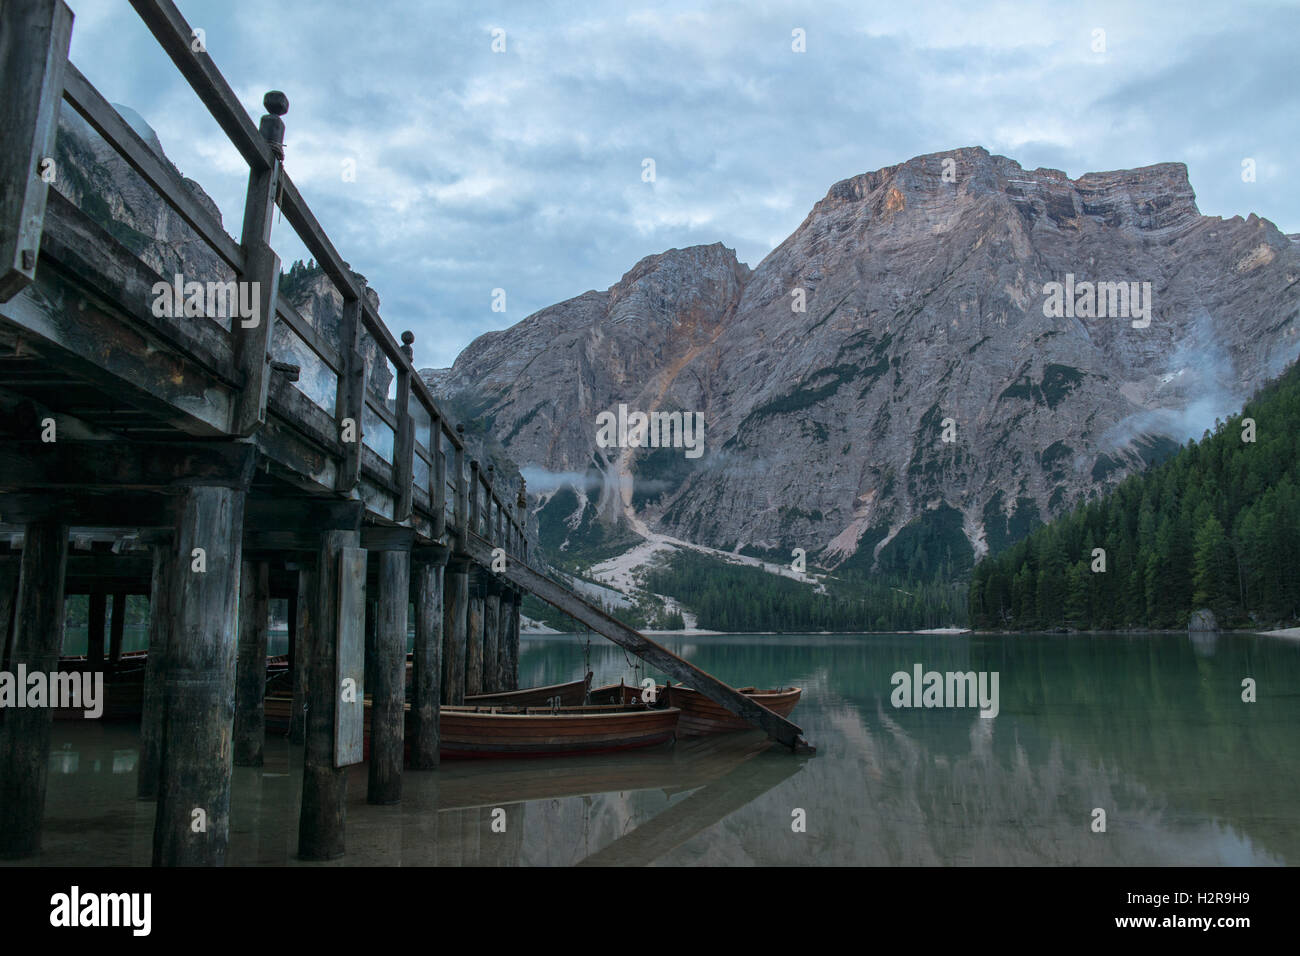 Braies Lake / Lago di Braies / Pragser Wildsee, dans l'italien, Dolomites Südtirol/Alto Adige / Tyrol du Sud - Italie Banque D'Images